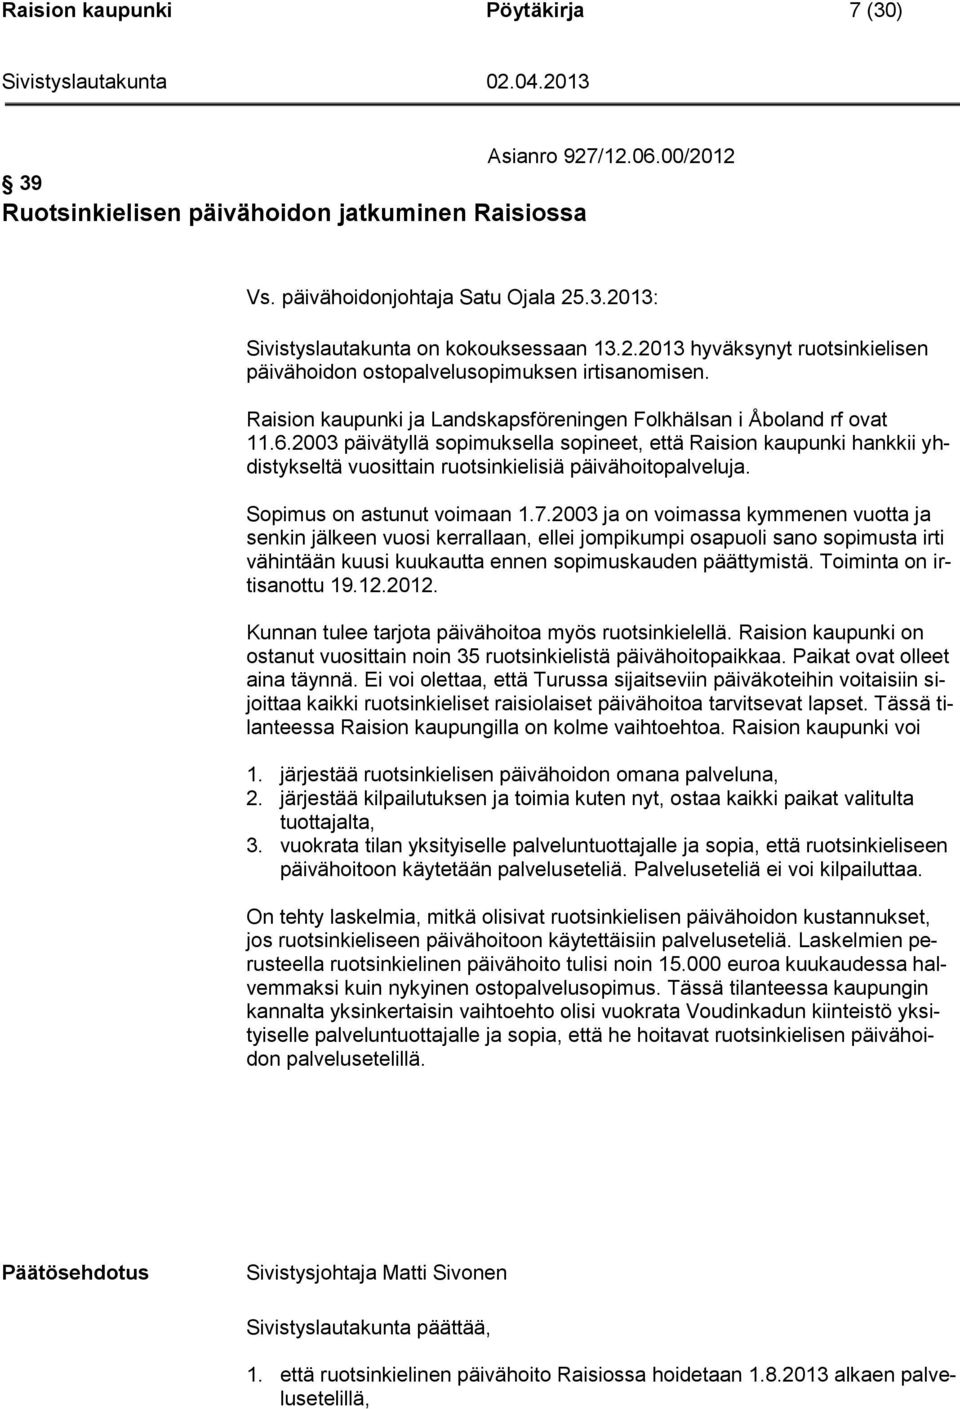 2003 päivätyllä sopimuksella sopineet, että Raision kaupunki hankkii yhdistykseltä vuosittain ruotsinkielisiä päivähoitopalveluja. Sopimus on astunut voimaan 1.7.